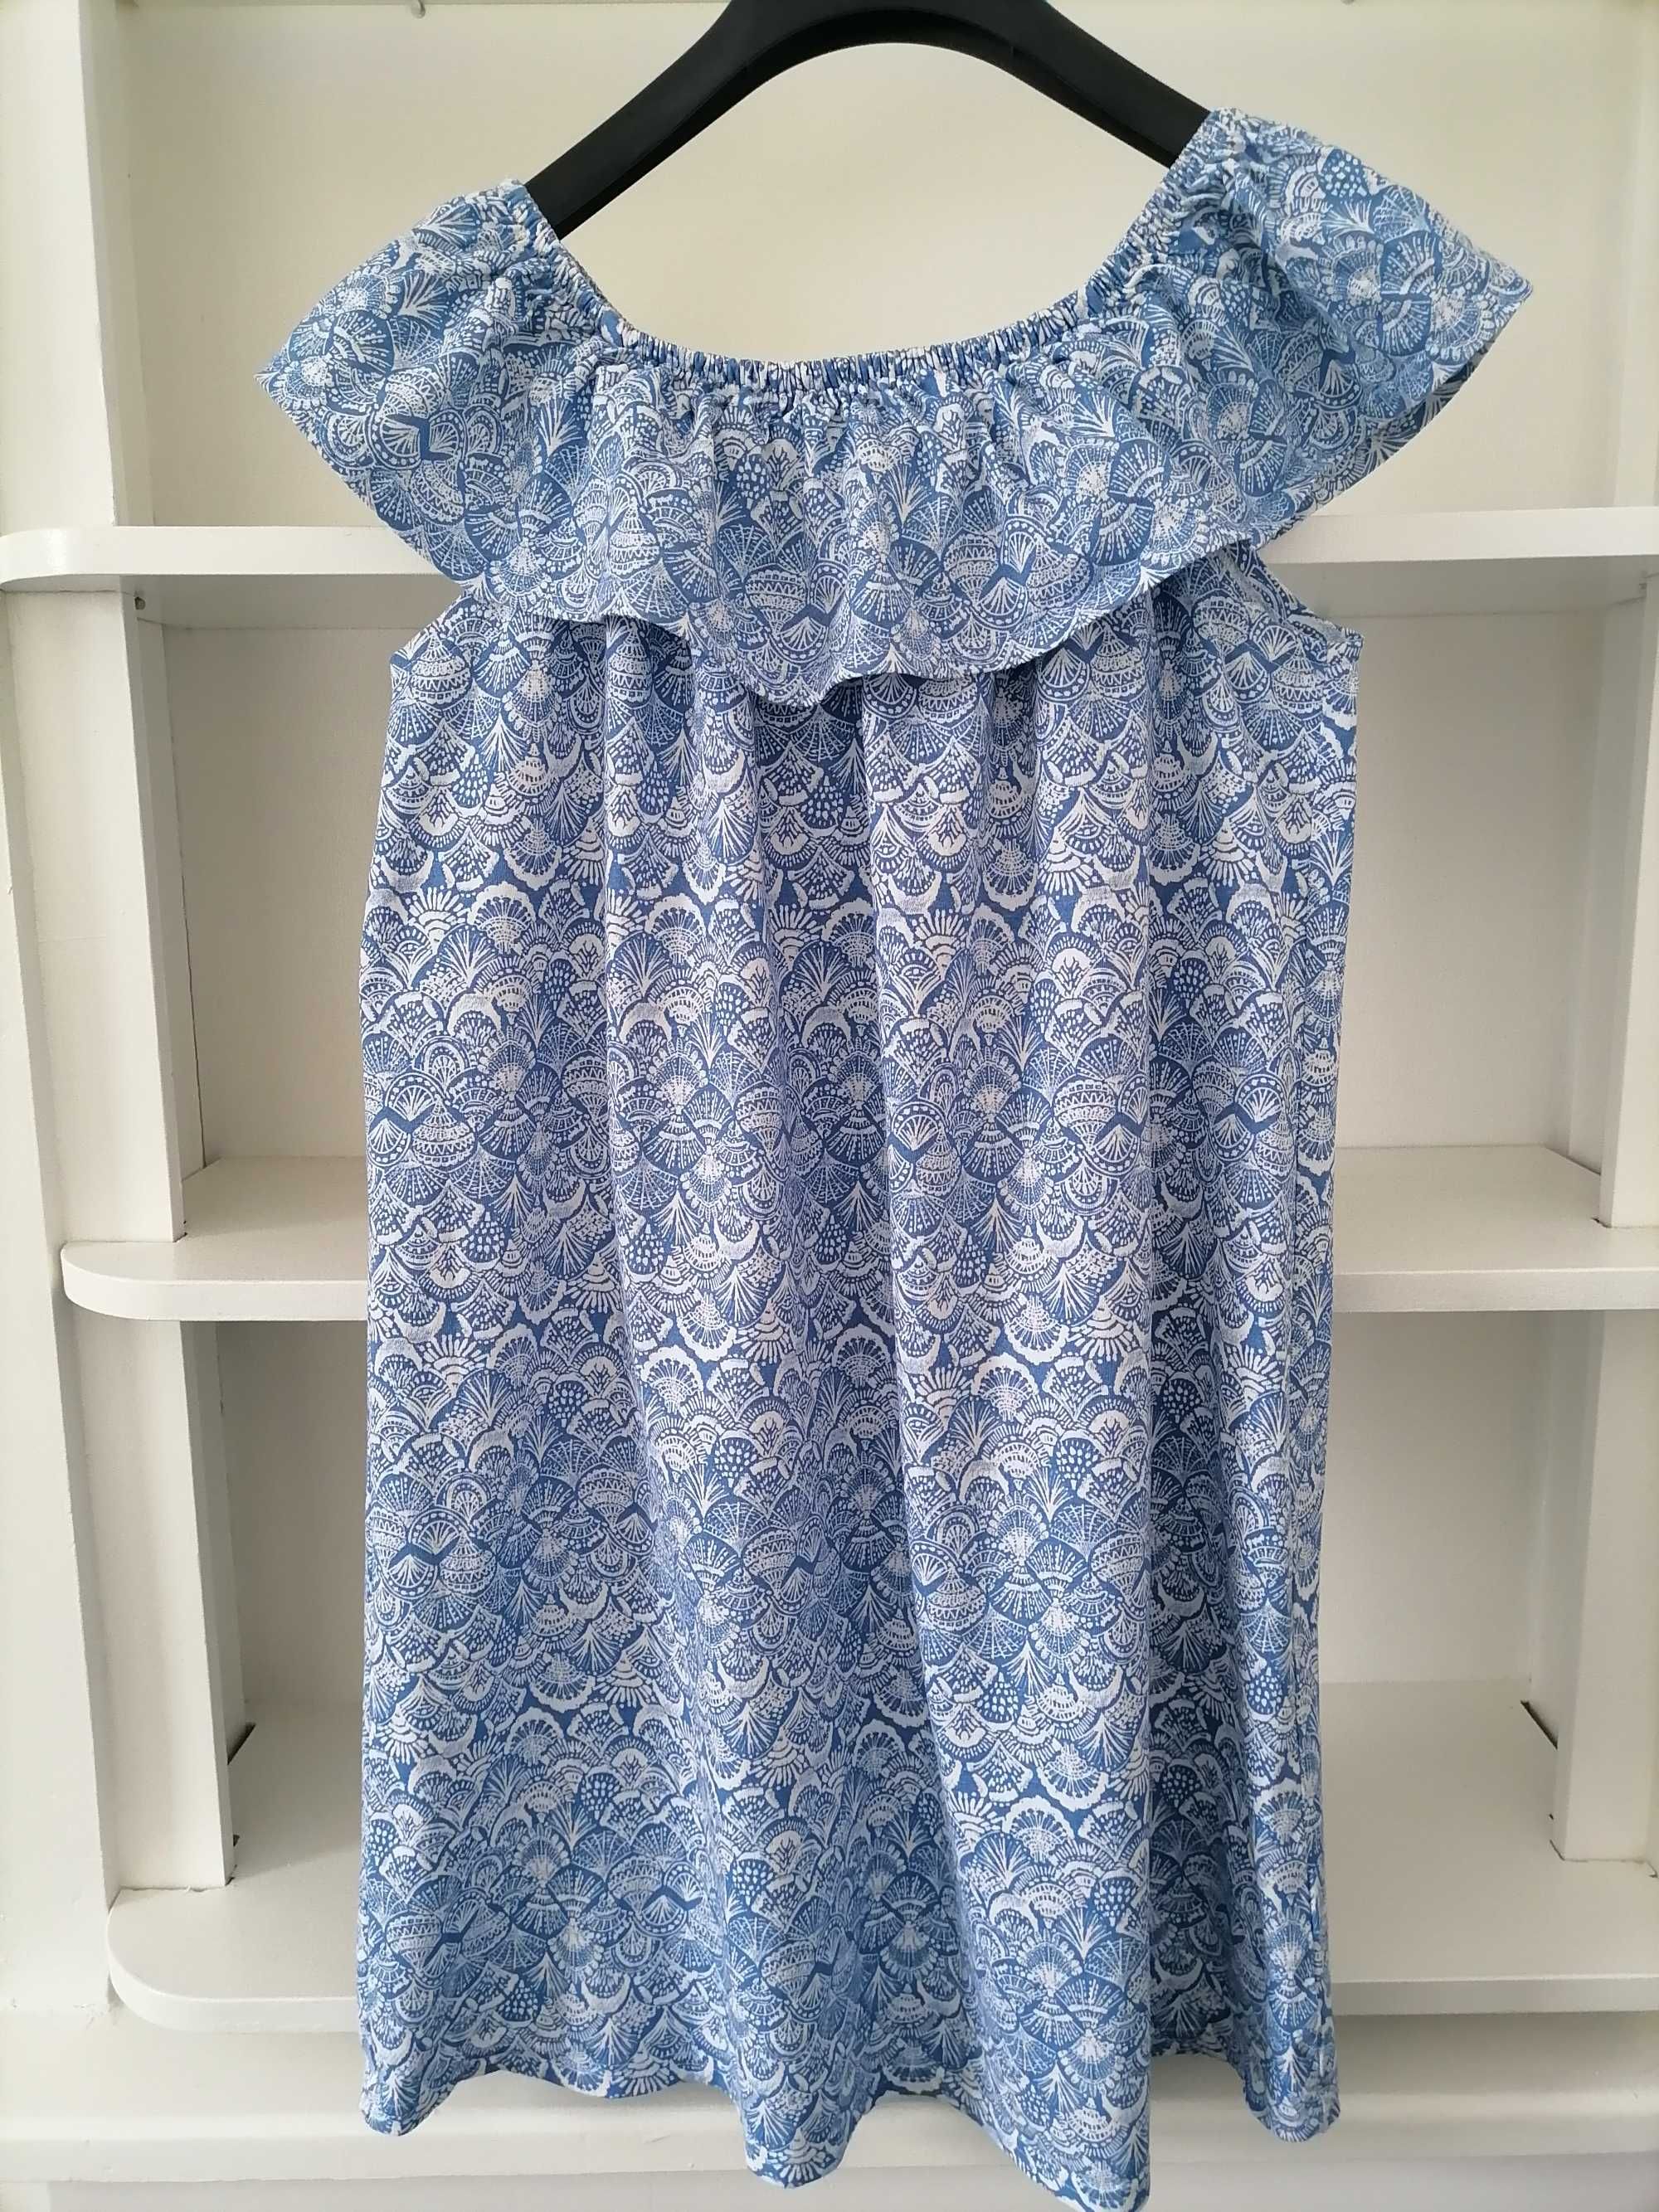 Sukienka hiszpanka w wachlarze, bawełna, Beloved, M, 38 (UK 10)